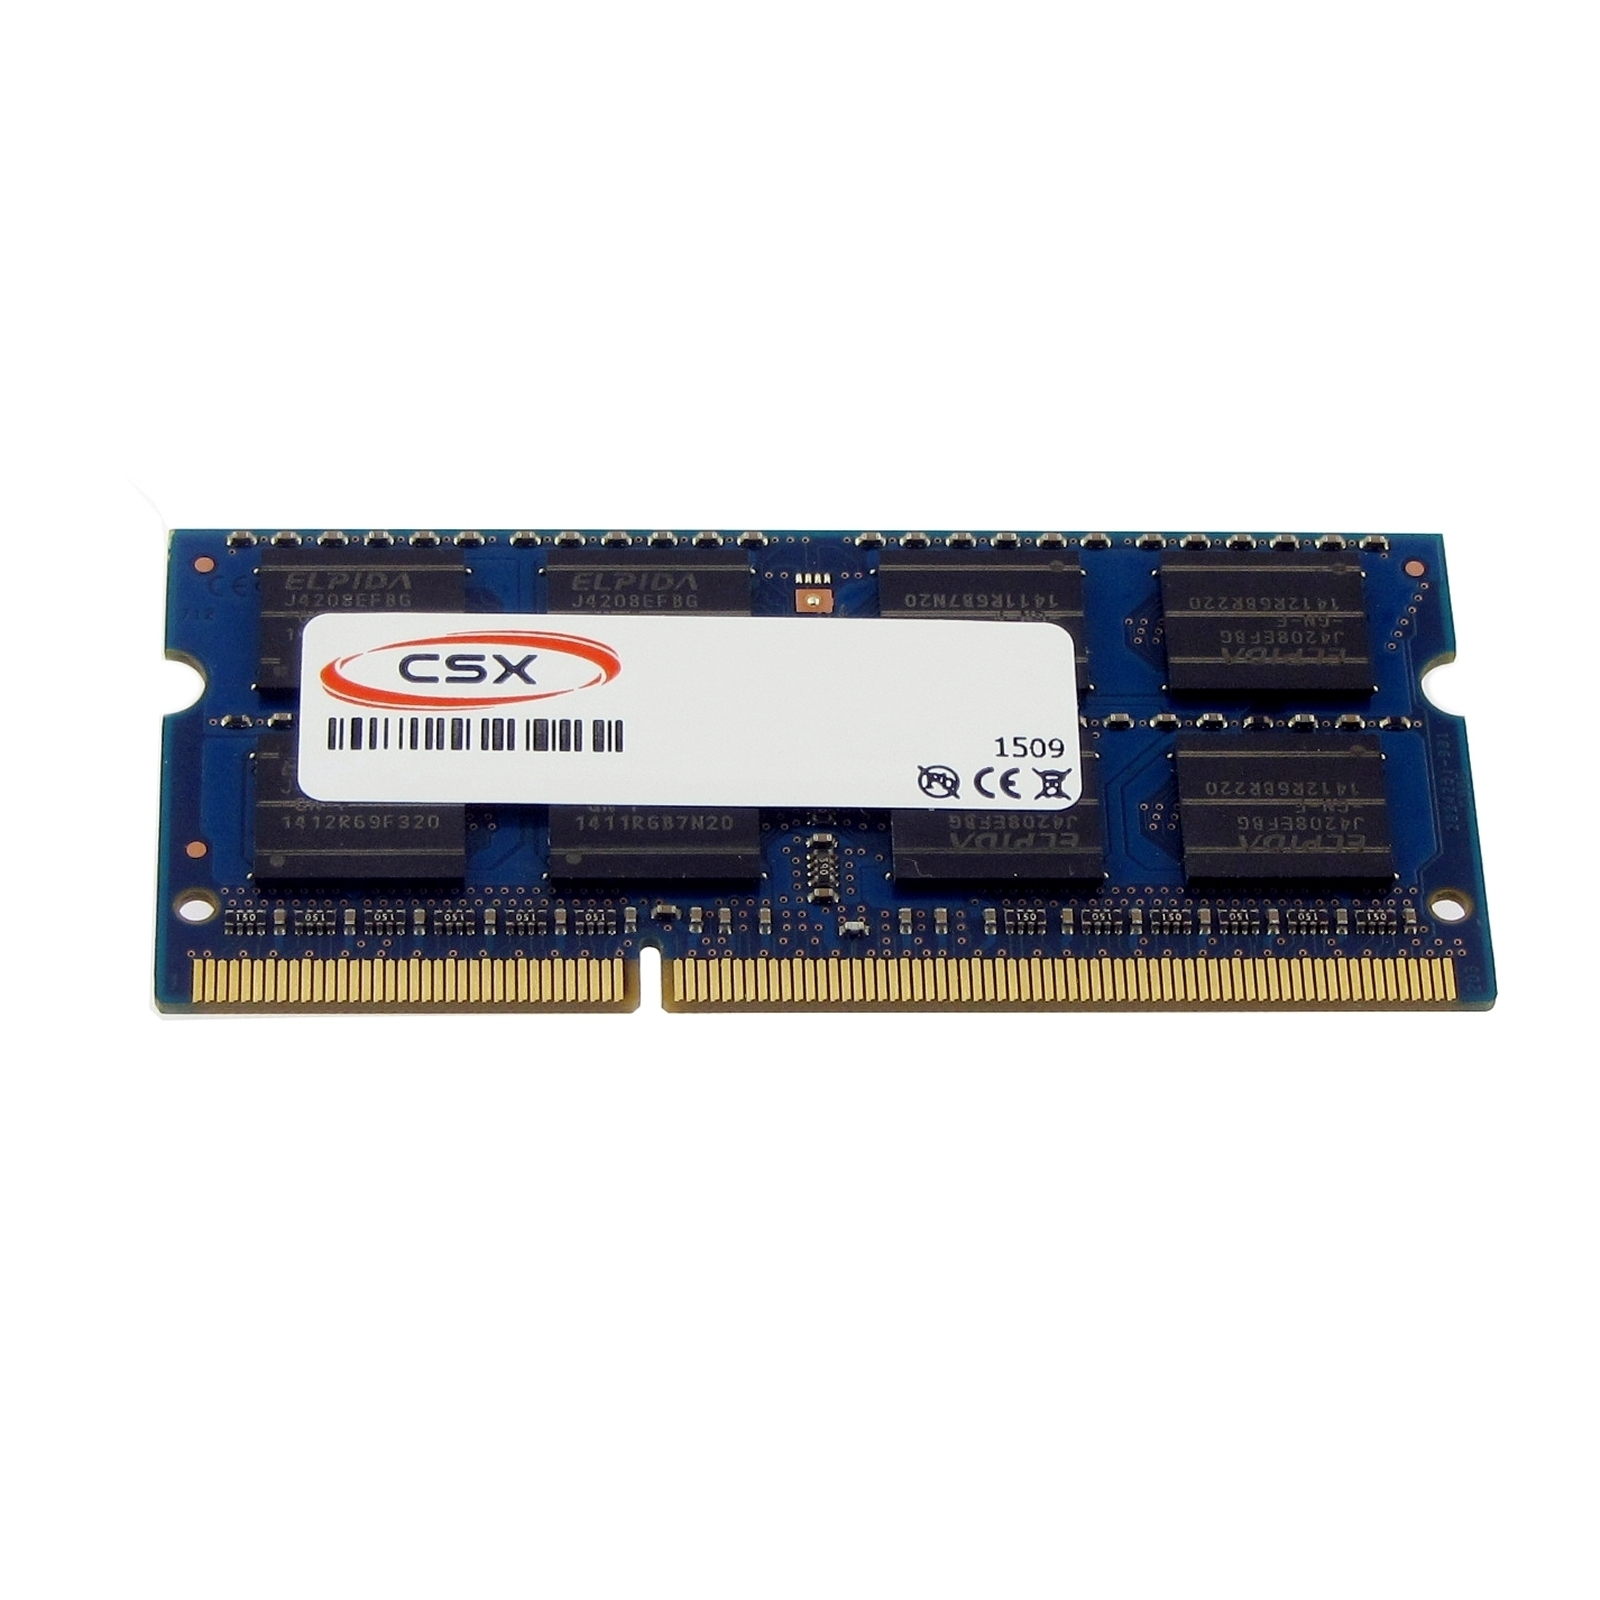 MTXTEC Arbeitsspeicher Satellite GB für DDR3 TOSHIBA RAM GB 4 4 C650-14U Notebook-Speicher